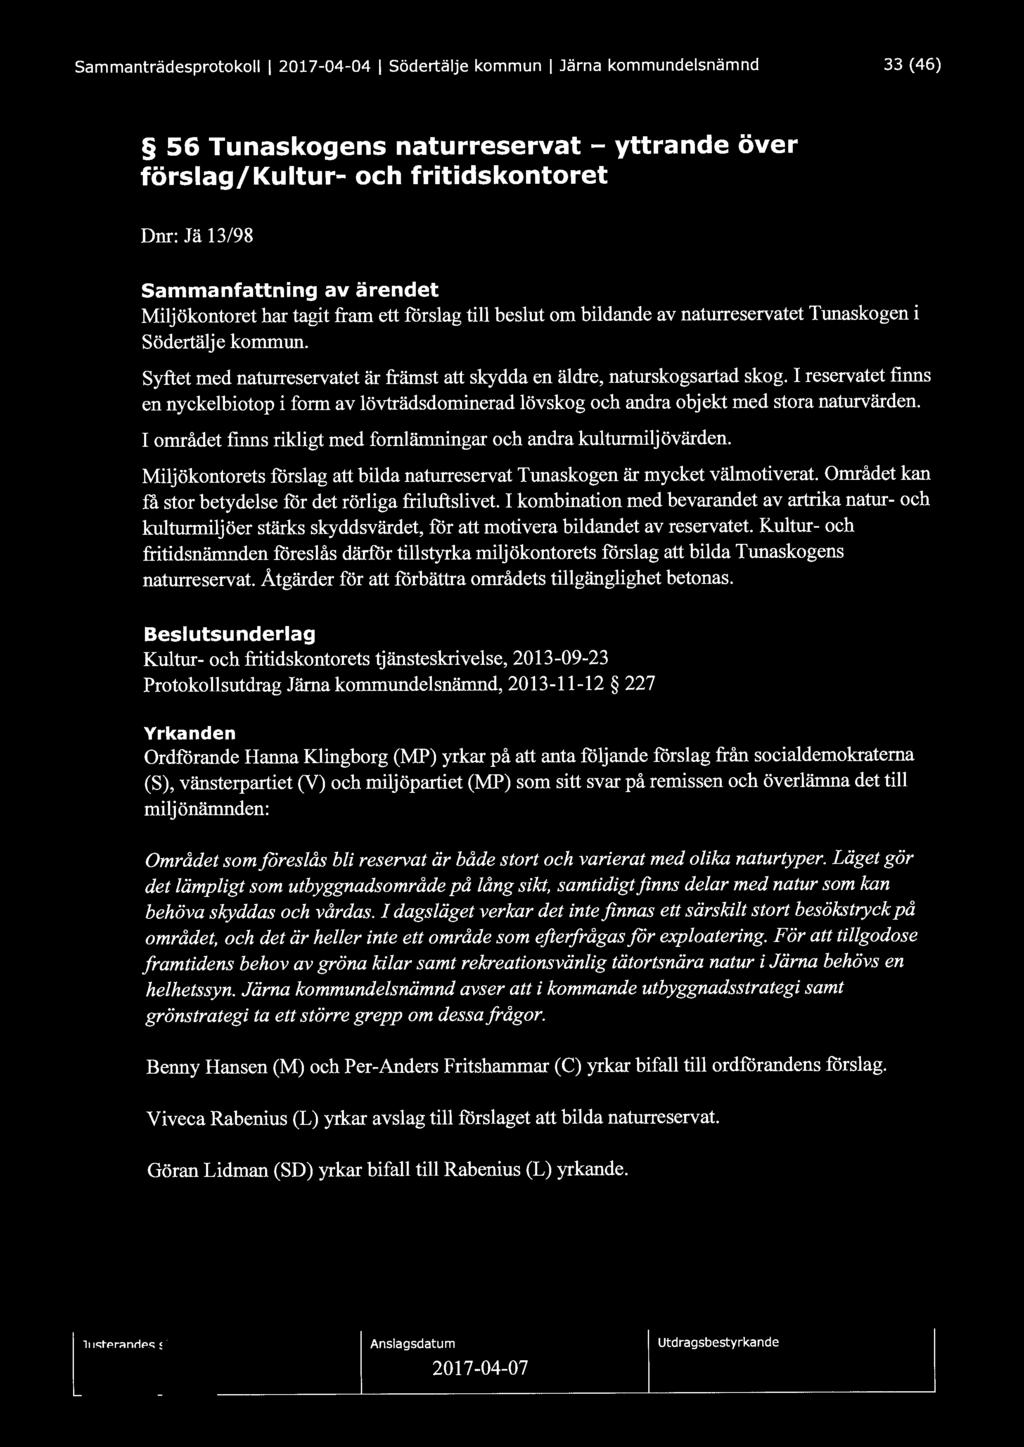 Sammanträdesprotokoll l 2017-04-04 l Södertälje kommun l Järna kommundelsnämnd 33 (46) 56 Tunaskogens naturreservat - yttrande över förslag/kultur- och fritidskontoret Dnr: Jä 13/98 Sammanfattning av